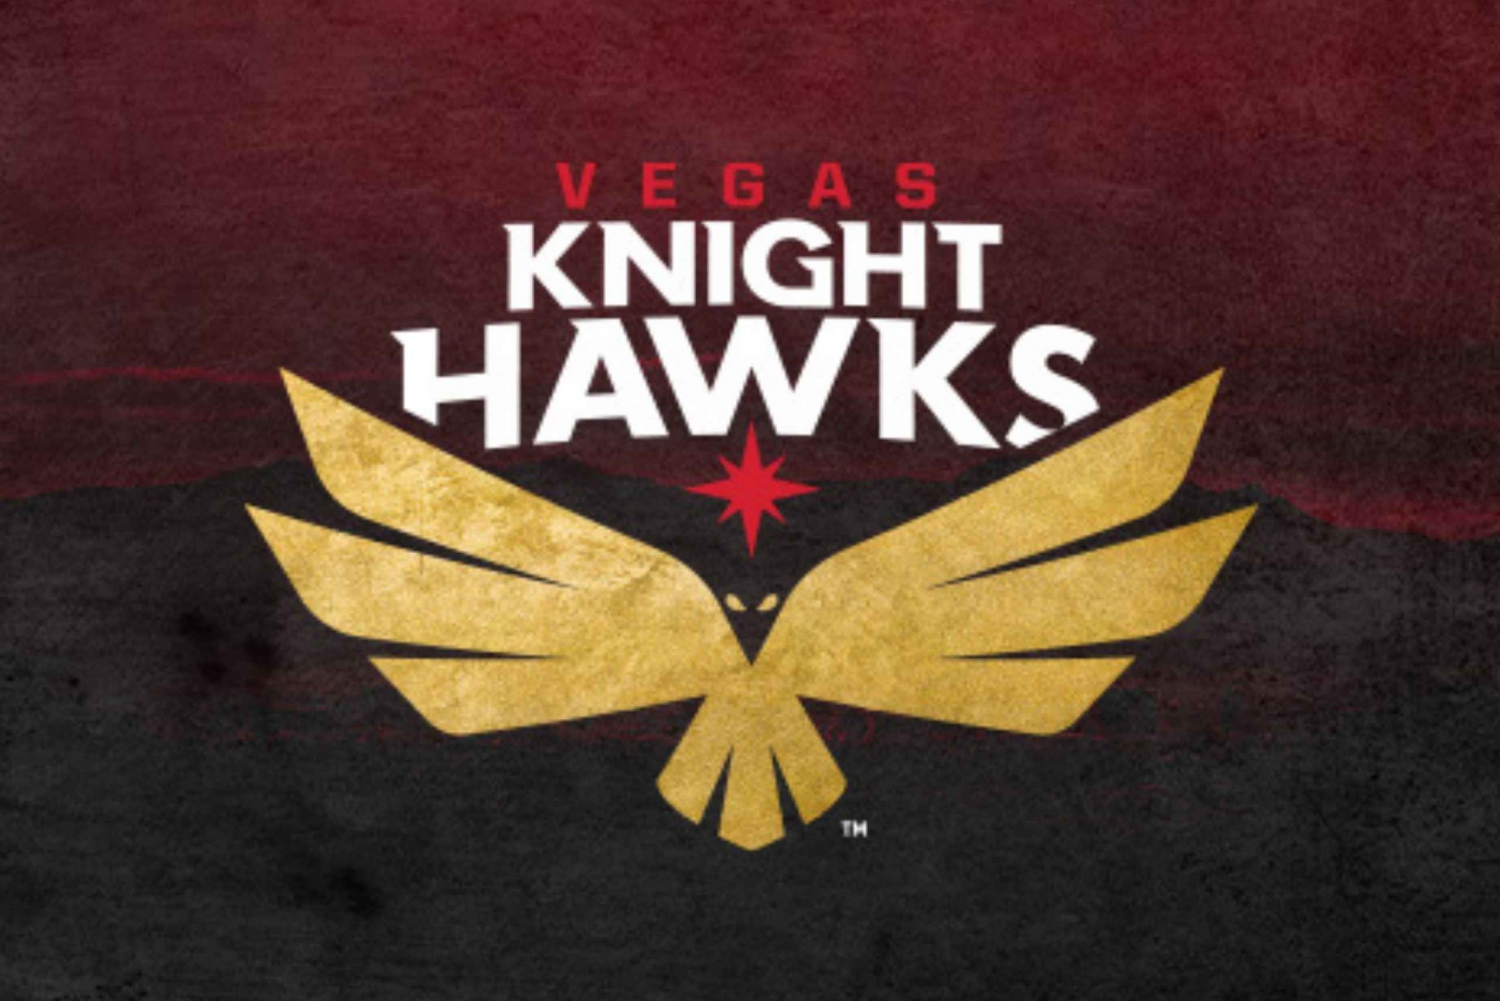 Vegas Knight Hawks - Ligue de football en salle